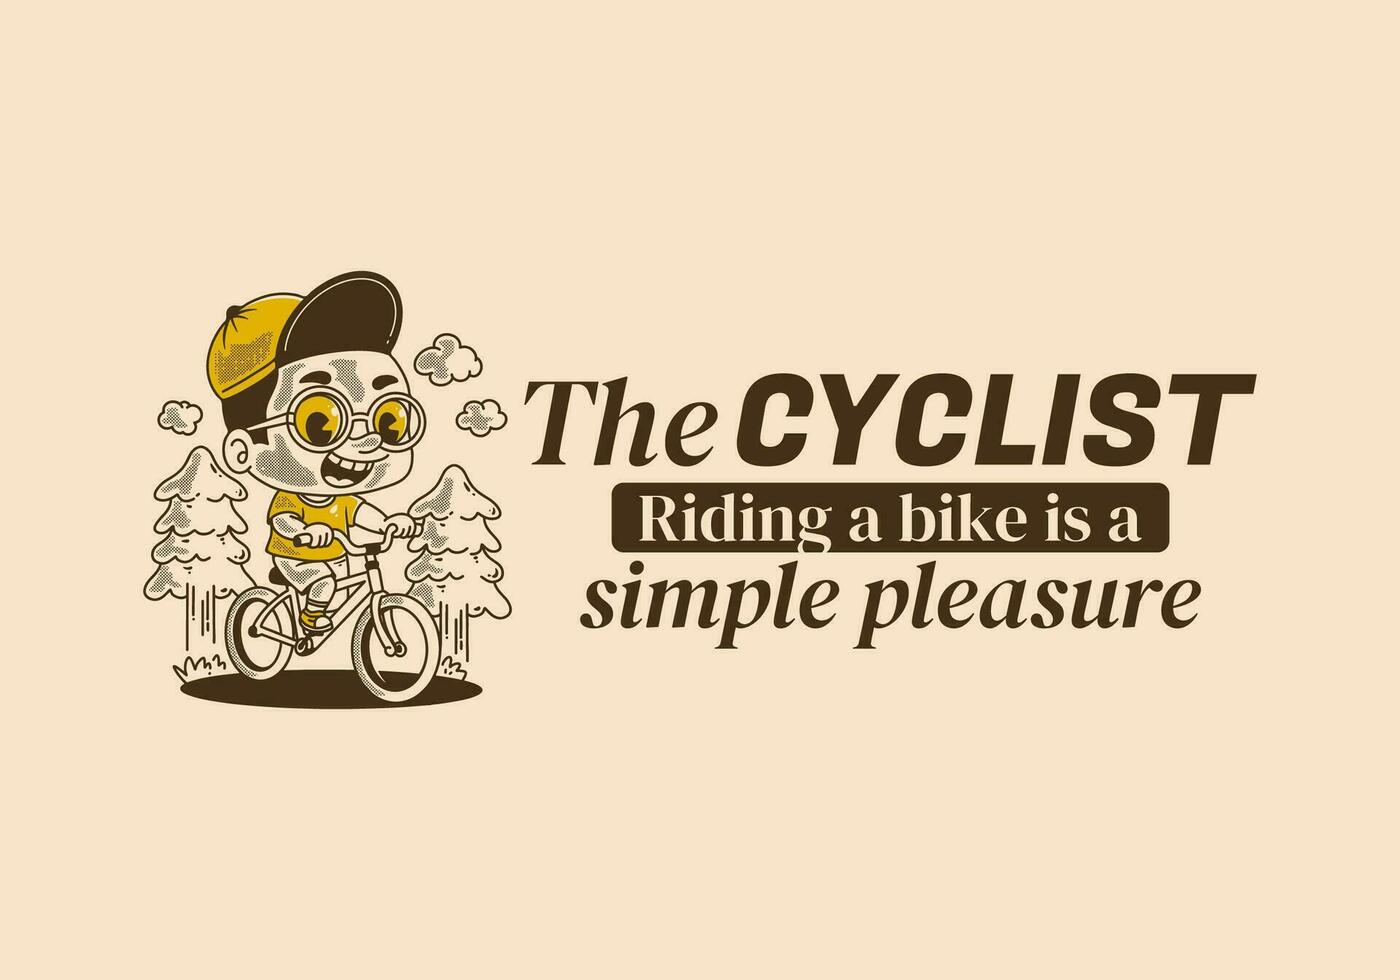 de fietser, rijden een fiets is een gemakkelijk genoegen. retro illustratie van een jongen rijden fiets, pijnboom bomen vector